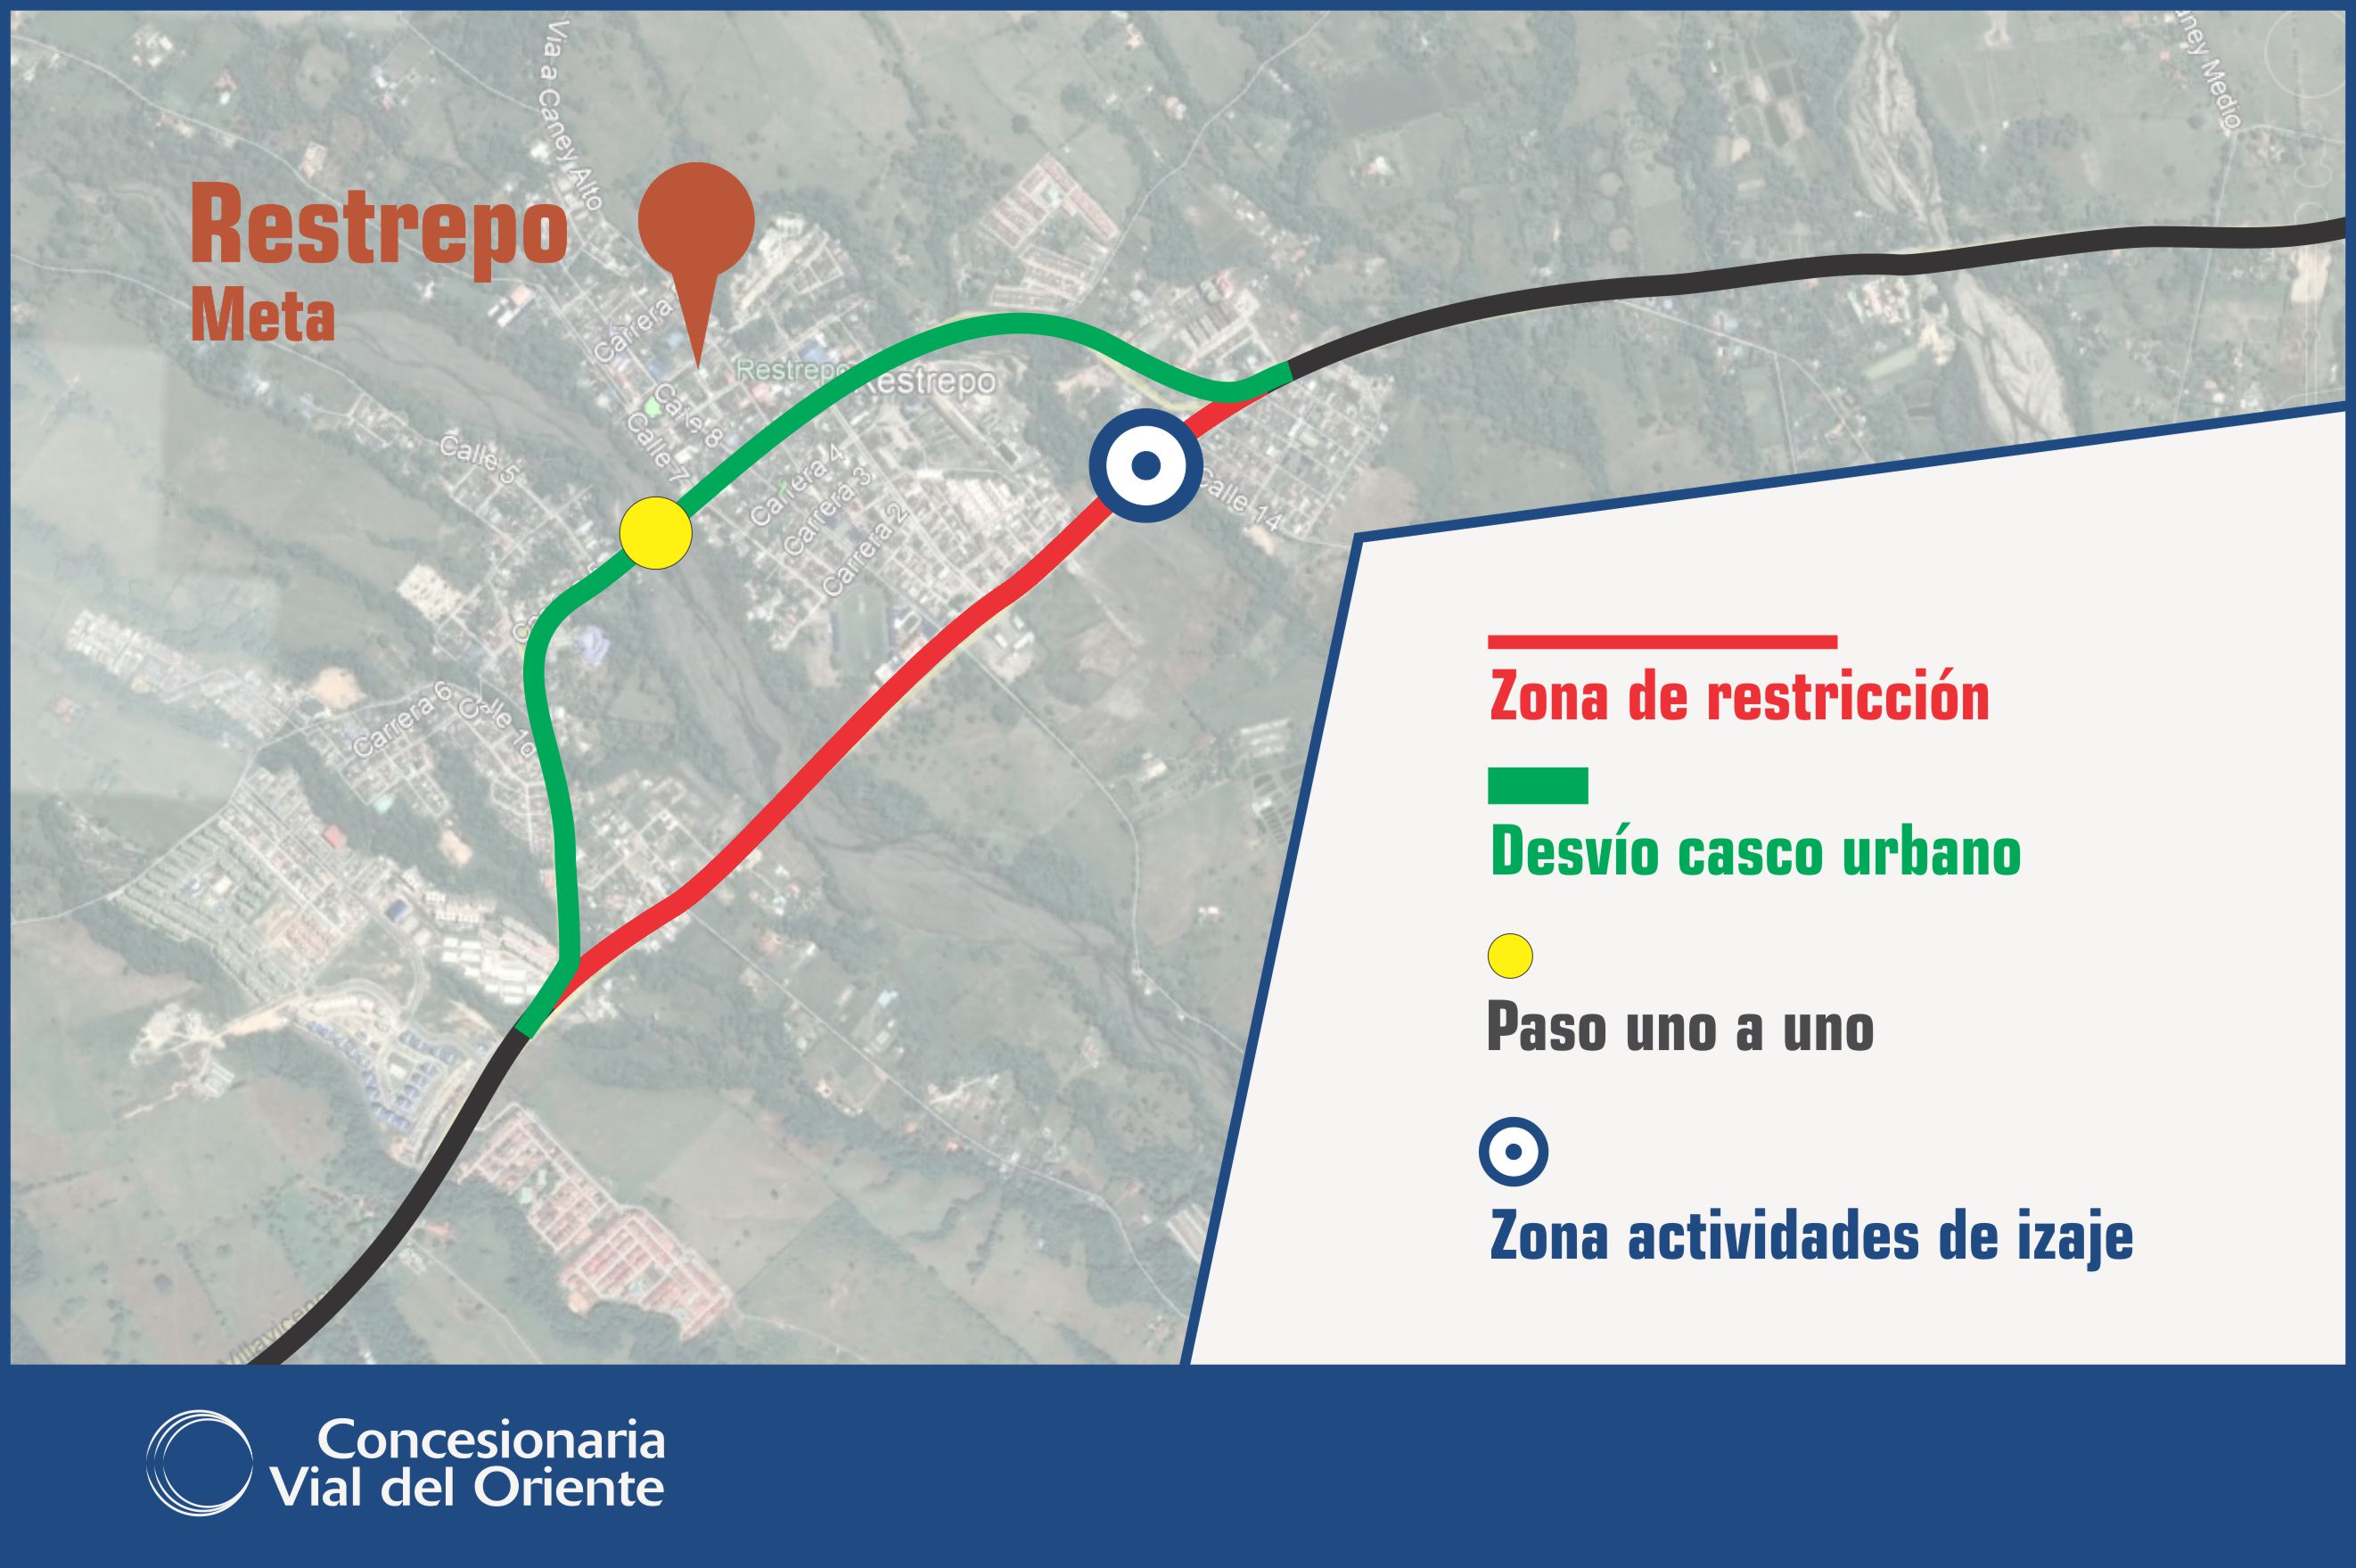 Villavicencio, 18 de diciembre de 2019. El viernes 20 y sábado 21 de diciembre de 2019 se restringirá el paso vehicular por la variante de Restrepo (ruta nacional 65MFT), en el horario comprendido entre las 9:00 p. m. y las 4:00 a. m. de cada noche, con el fin de realizar el izaje de las […]